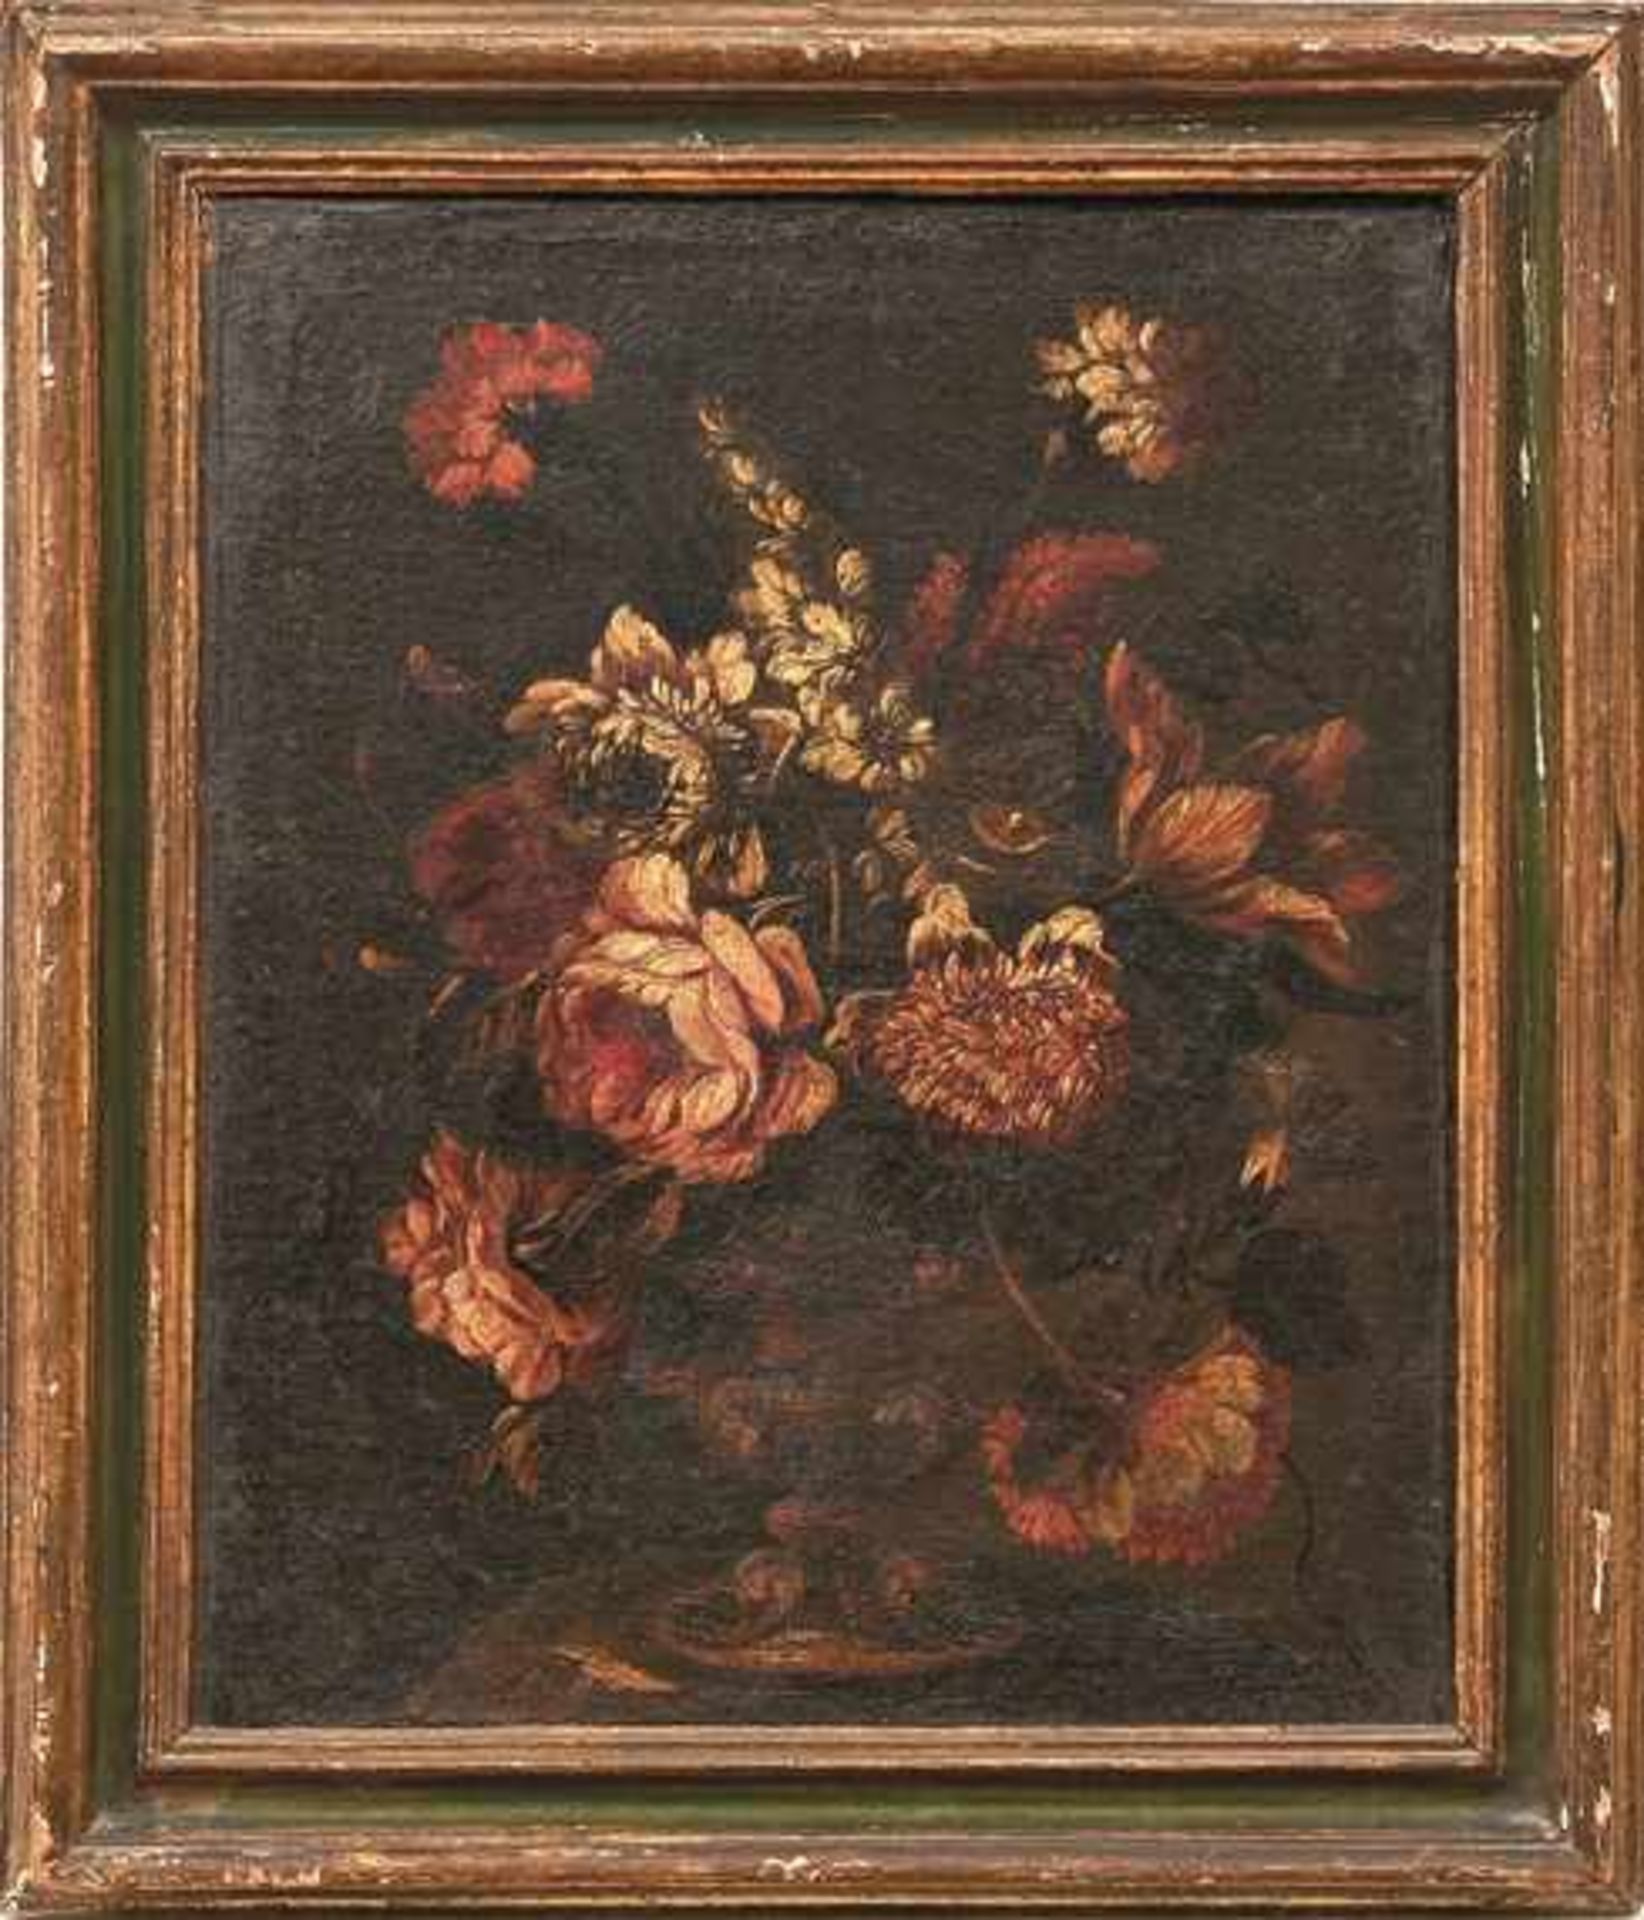 Satz von drei Blumenstillleben Neapolitanische Schule um 1700 Öl/Lwd. 43 x 36 cm. - Dieses Los wurde - Bild 2 aus 3